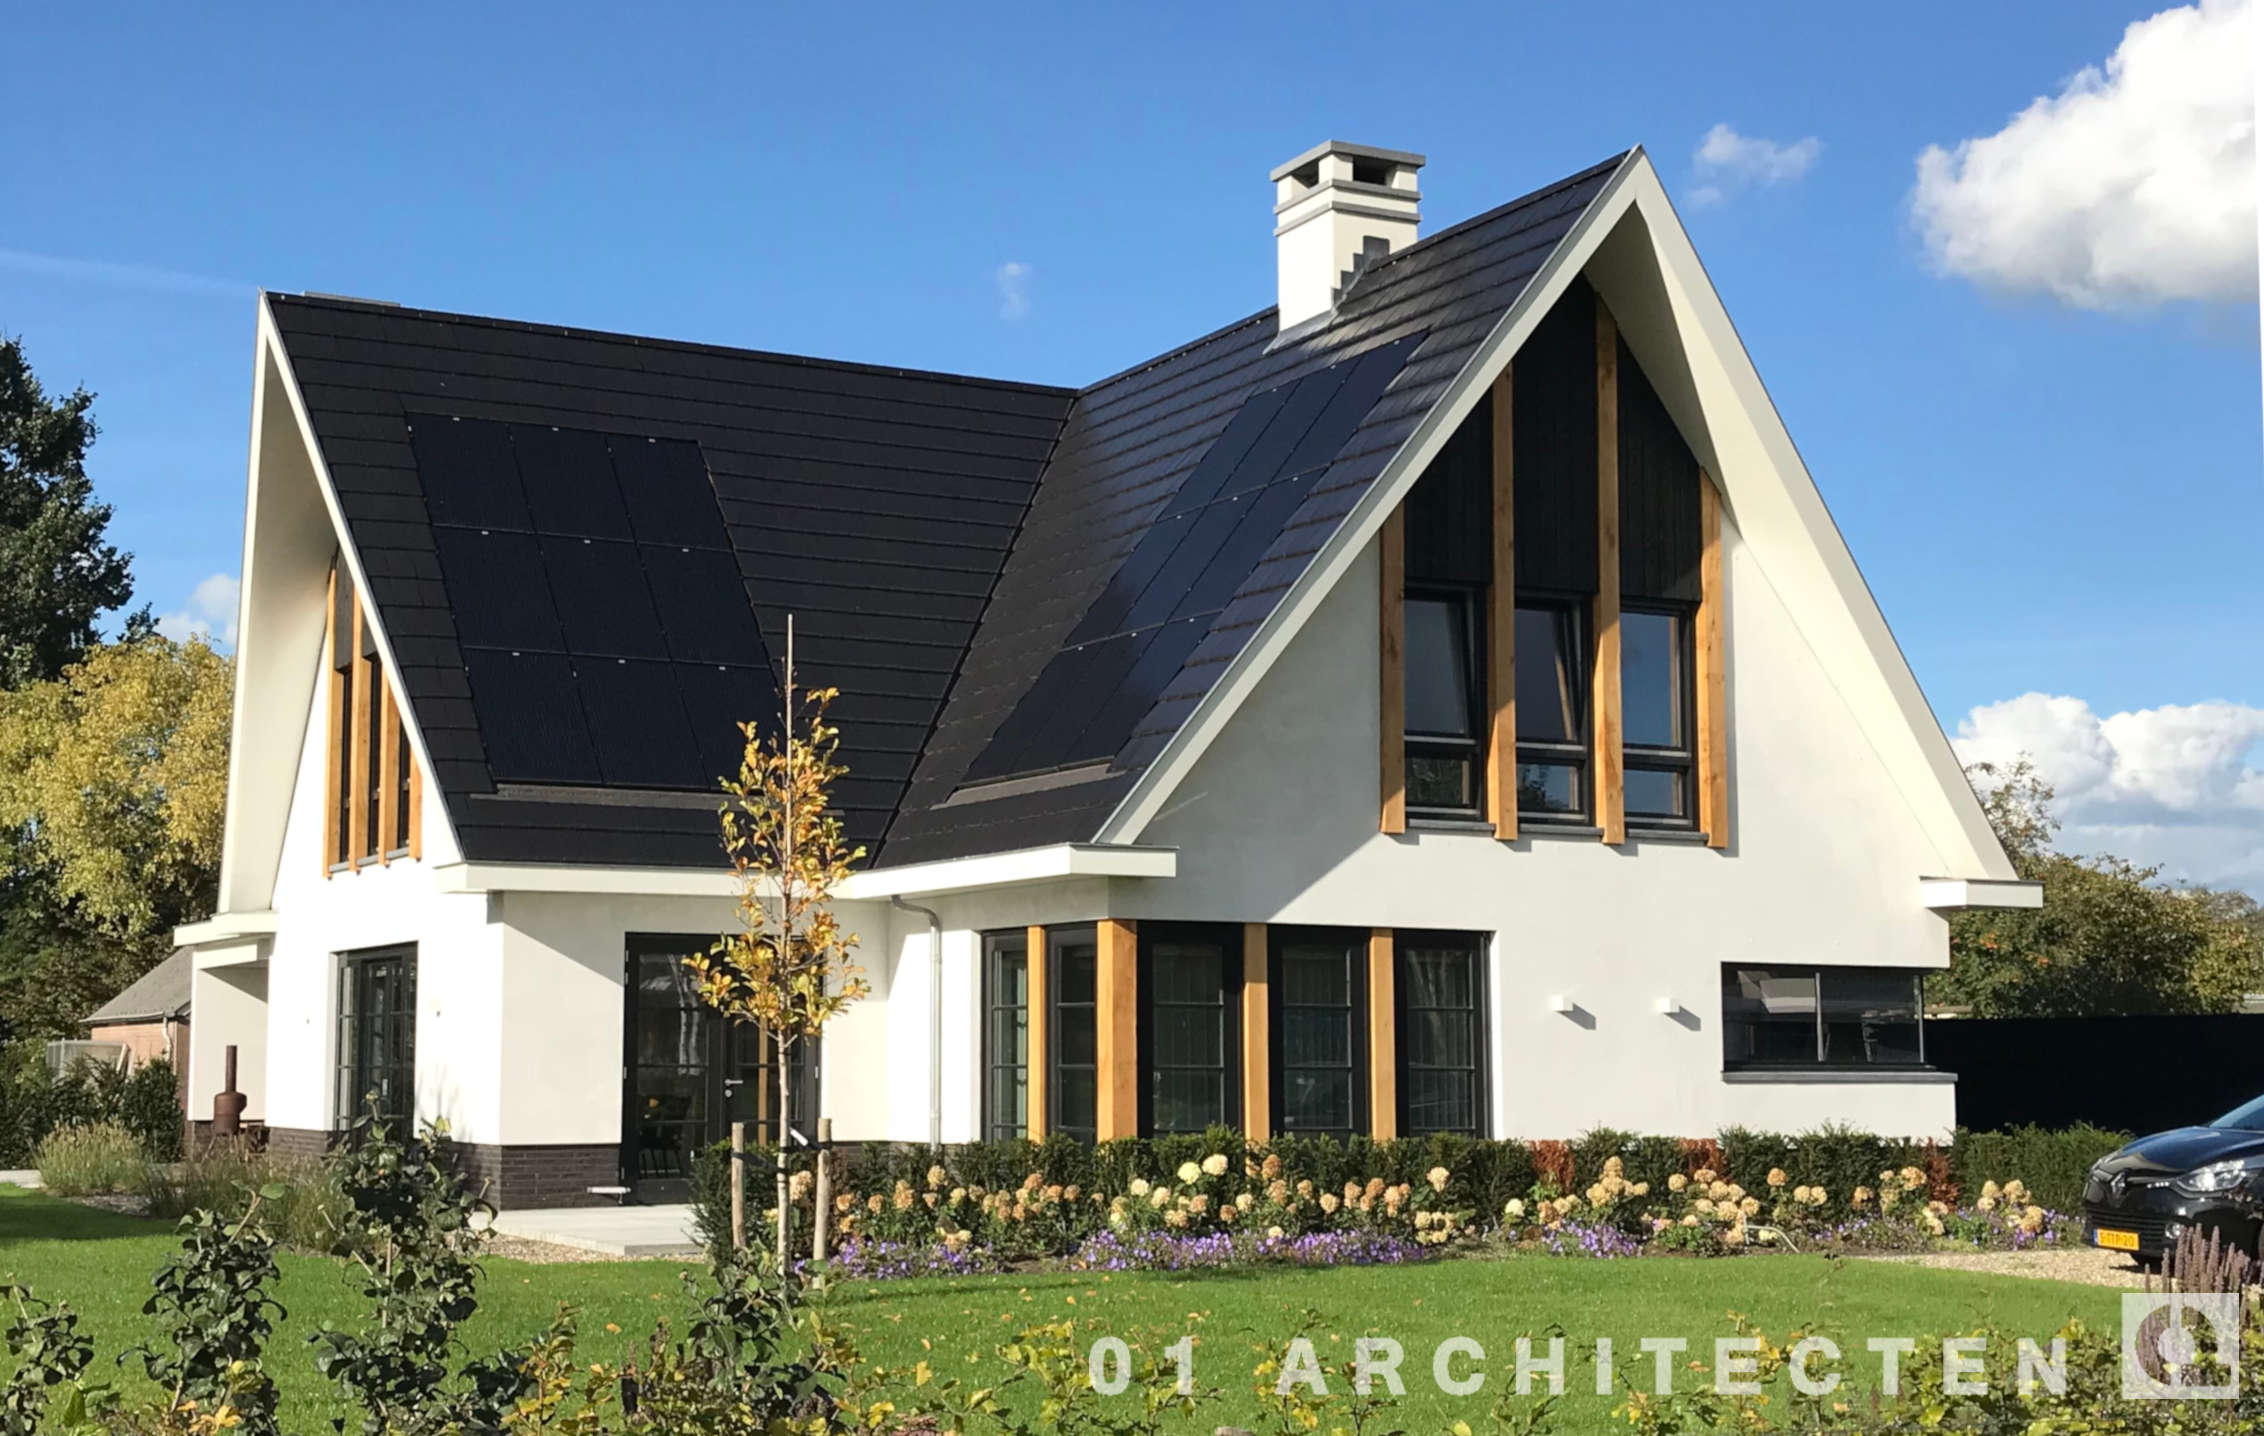 Nieuwbouw villa in Hellendoorn met wit stucwerk, eikenhouten balken en vlakke dakpannen